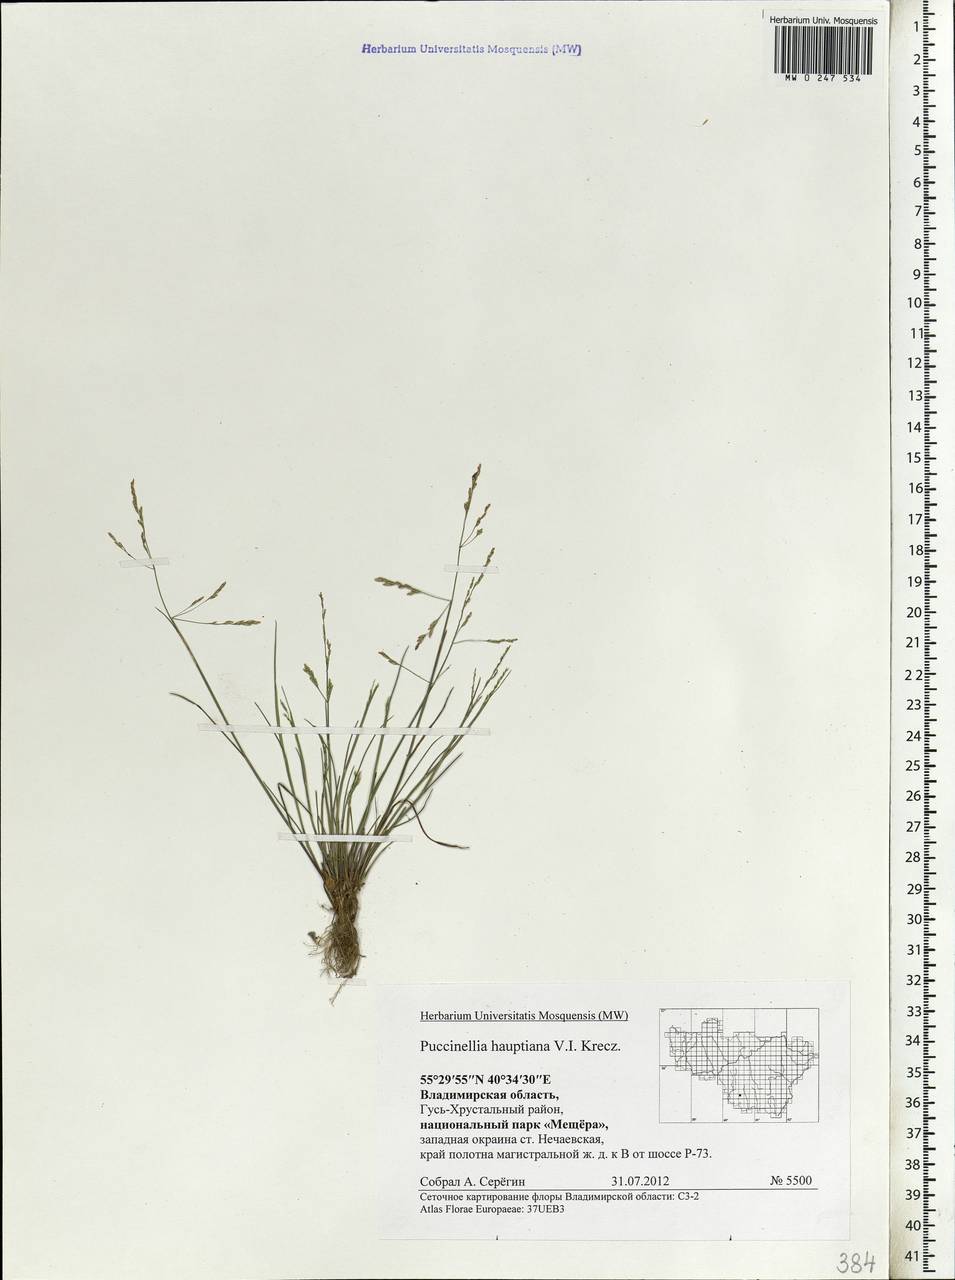 Puccinellia hauptiana (V.I.Krecz.) Kitag., Eastern Europe, Central region (E4) (Russia)